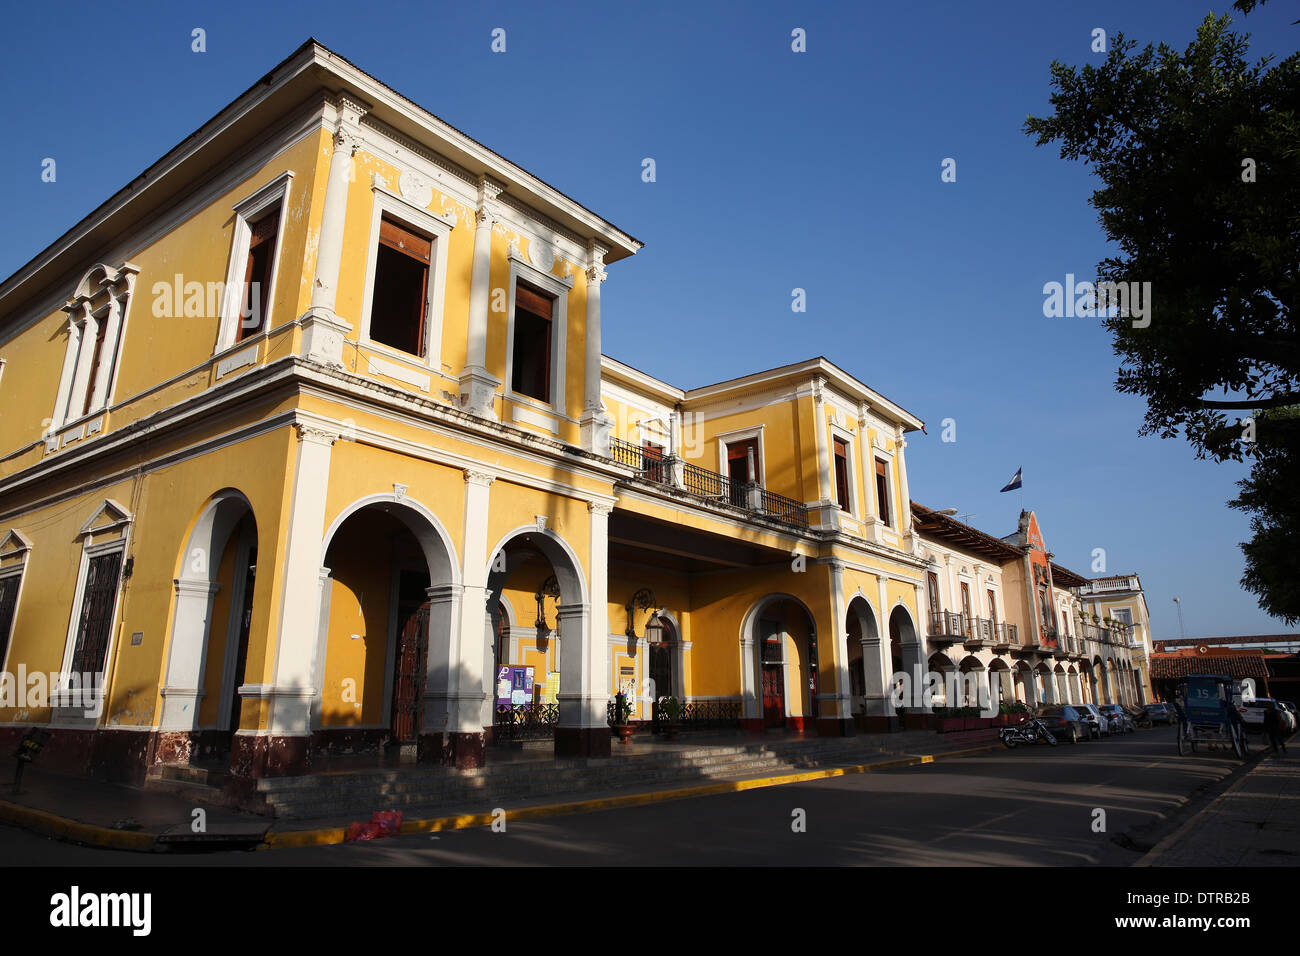 Edificio colonial restaurado, Granada, Nicaragua Foto de stock